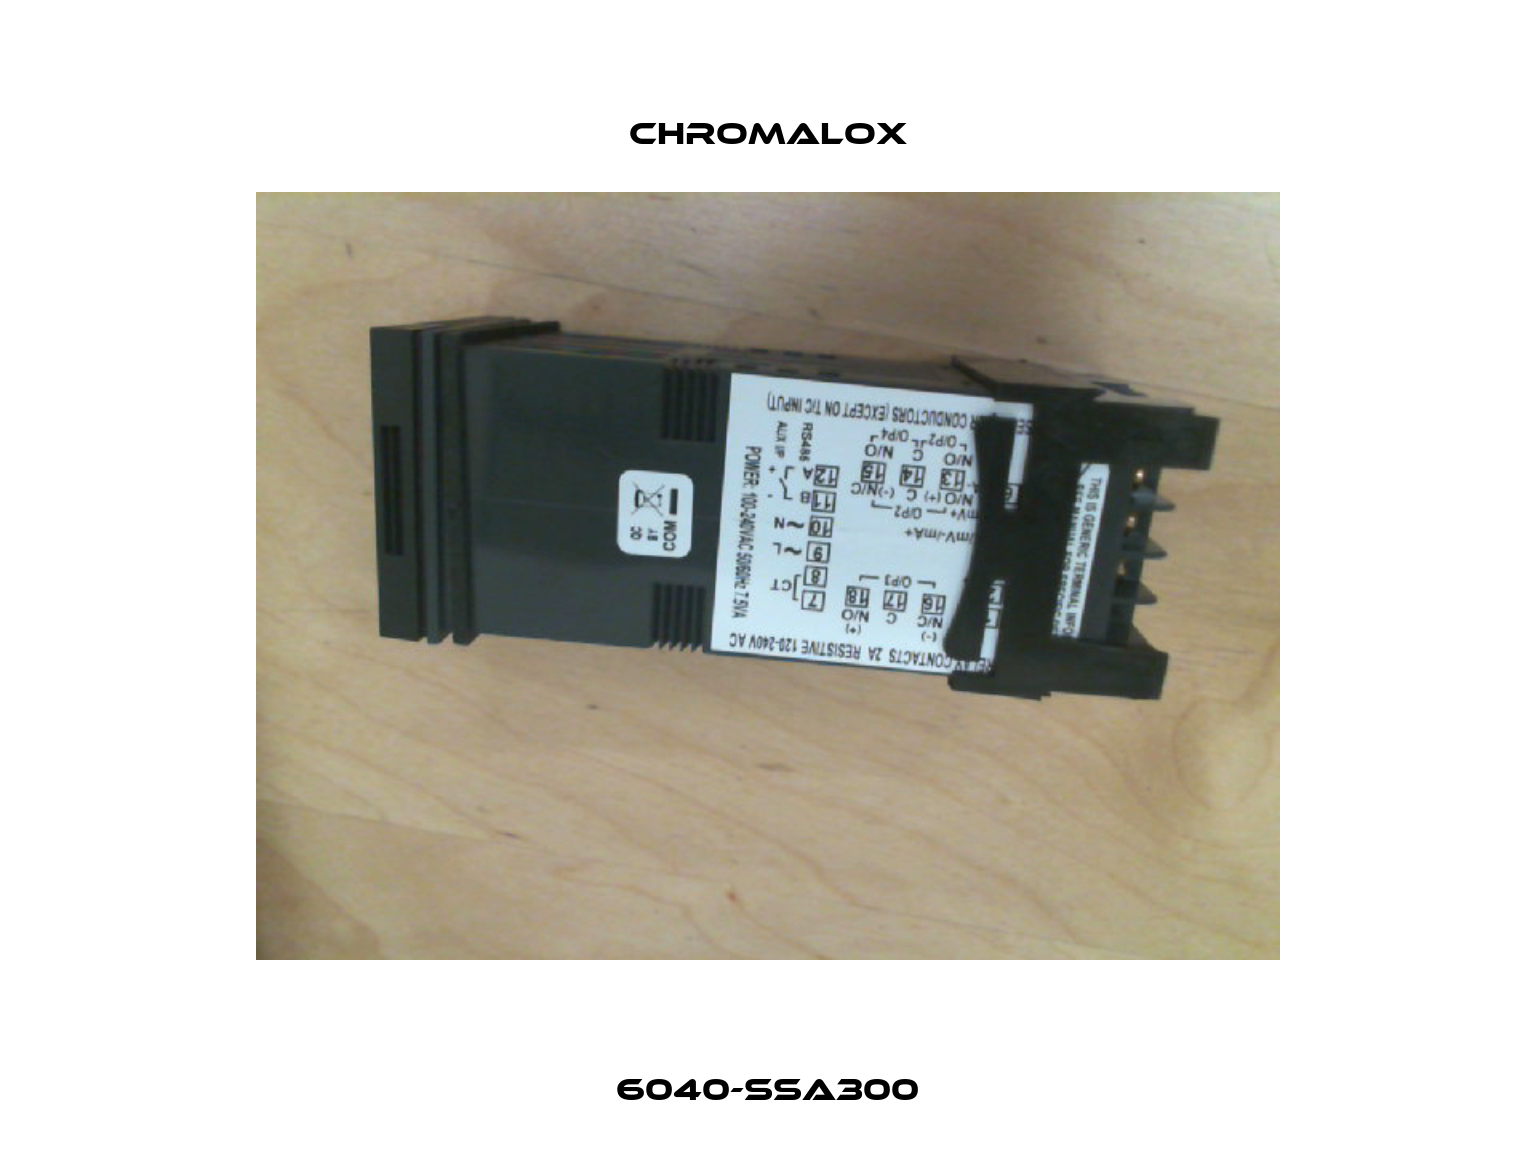 6040-SSA300 Chromalox